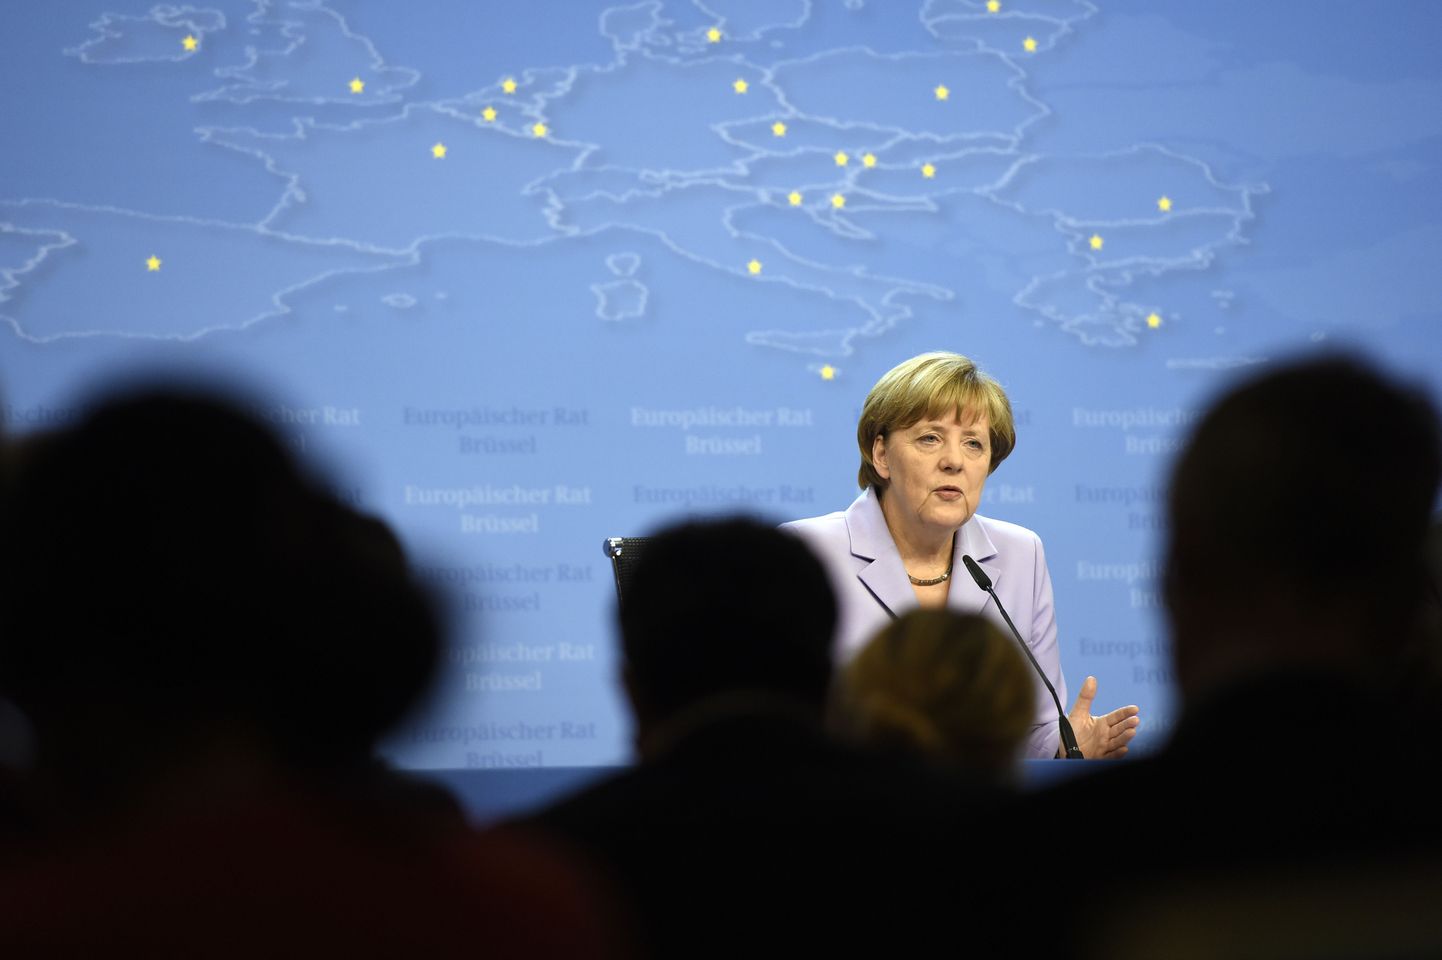 Saksamaa kantsler Angela Merkel hakkab Saksamaa poliitikutega Kreeka olukorda ja selle võimalikke tagajärgi arutama.